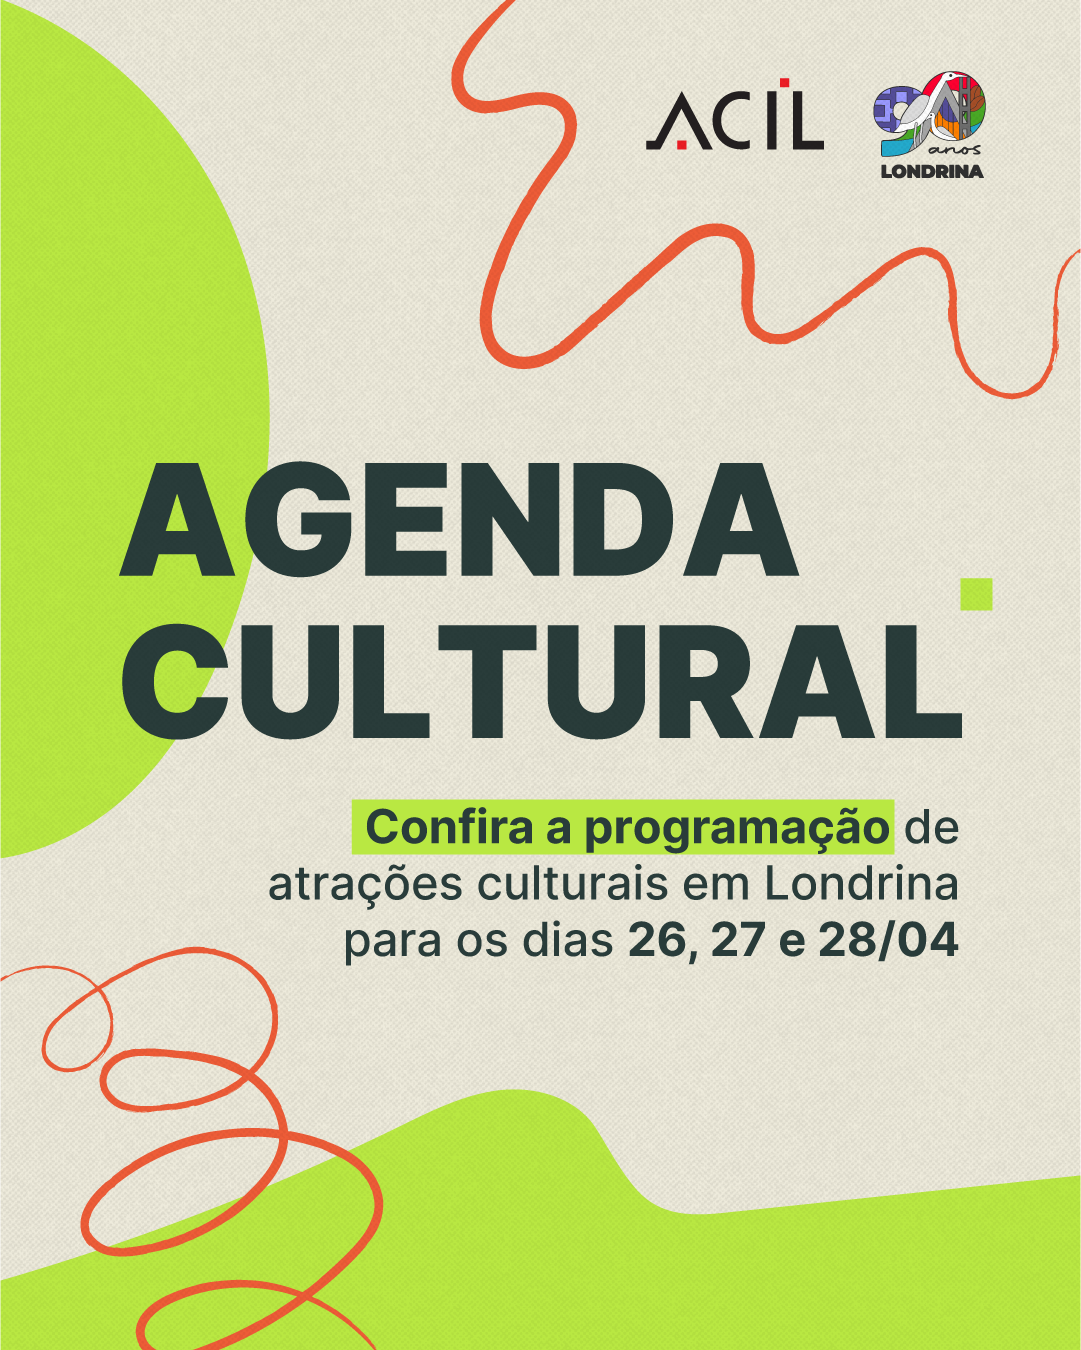 Agenda cultural: confira a programação para o fim de semana em Londrina